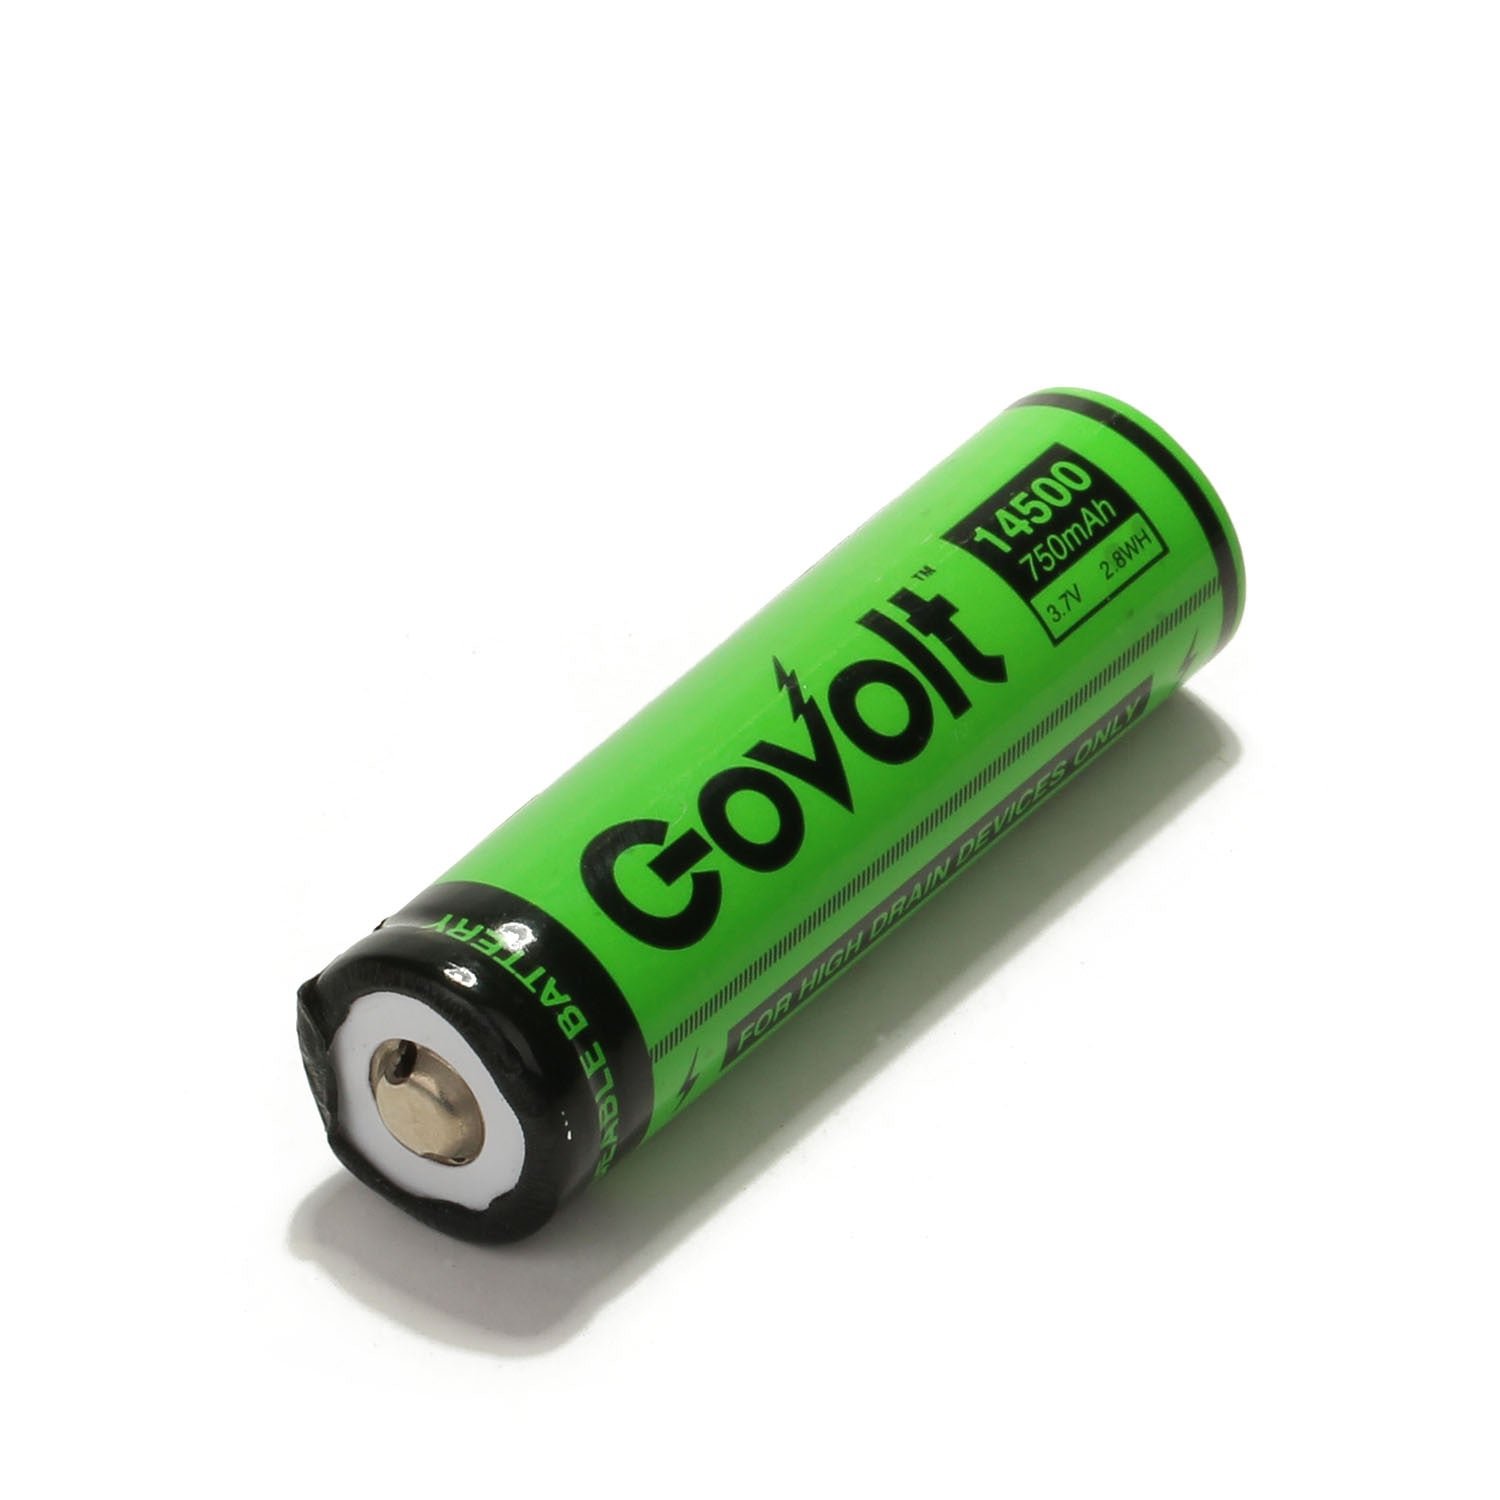 14500 Li-ion Rechargeable Battery 750mAh